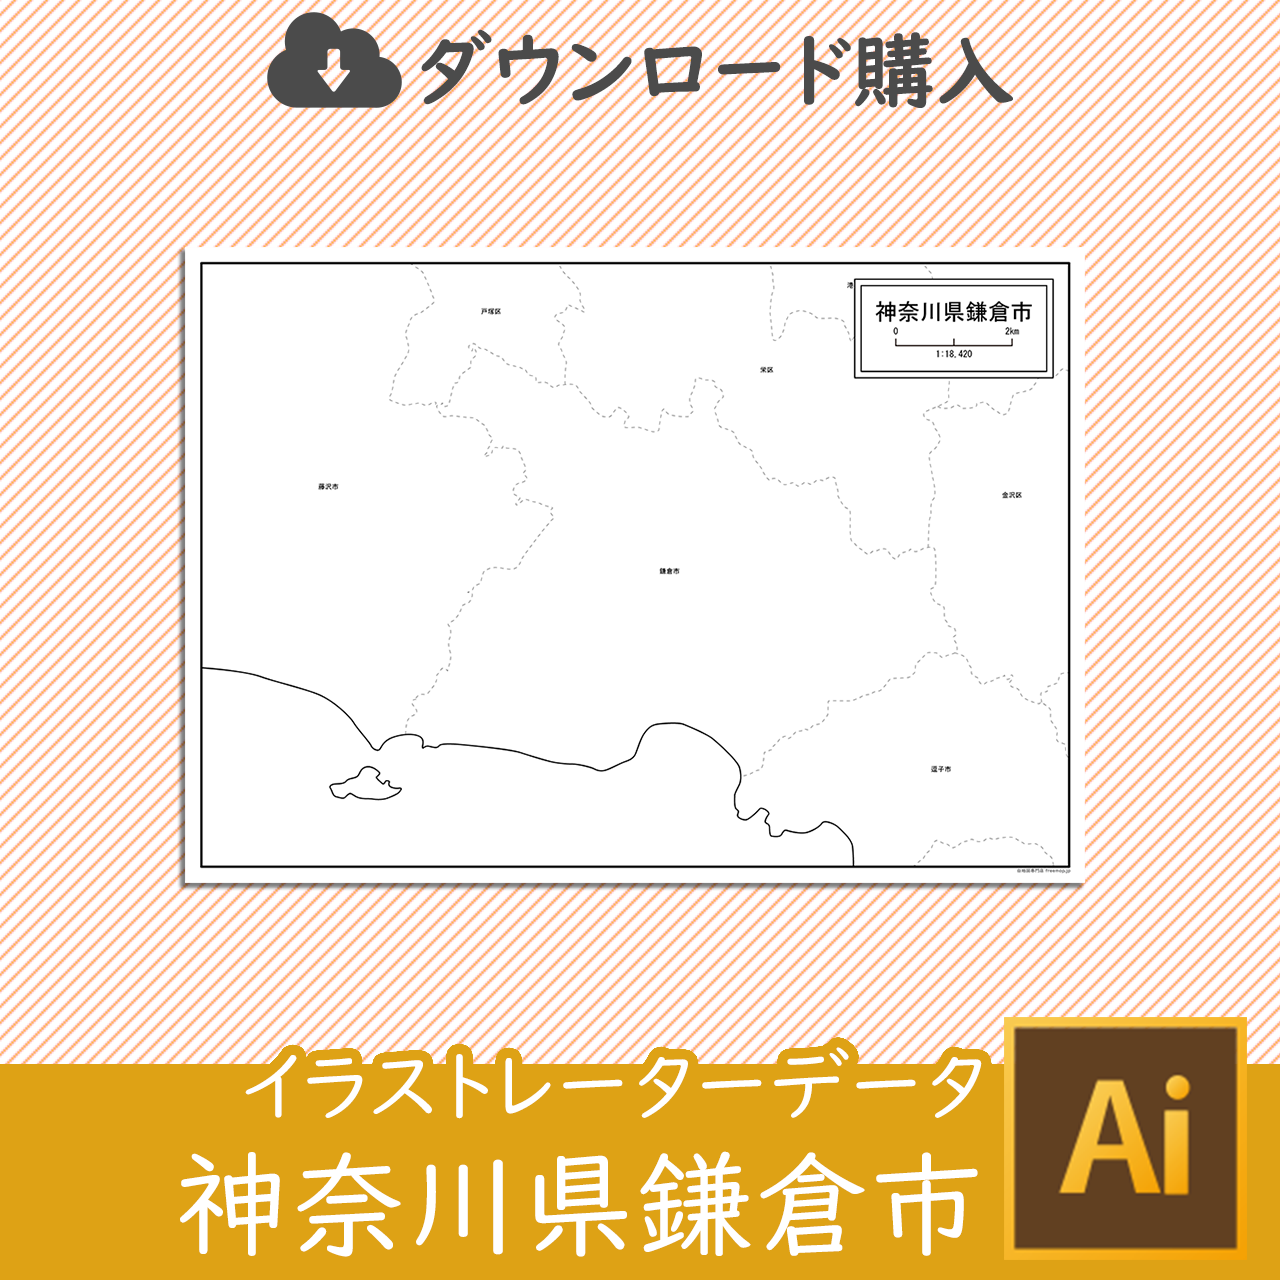 鎌倉市のaiデータのサムネイル画像